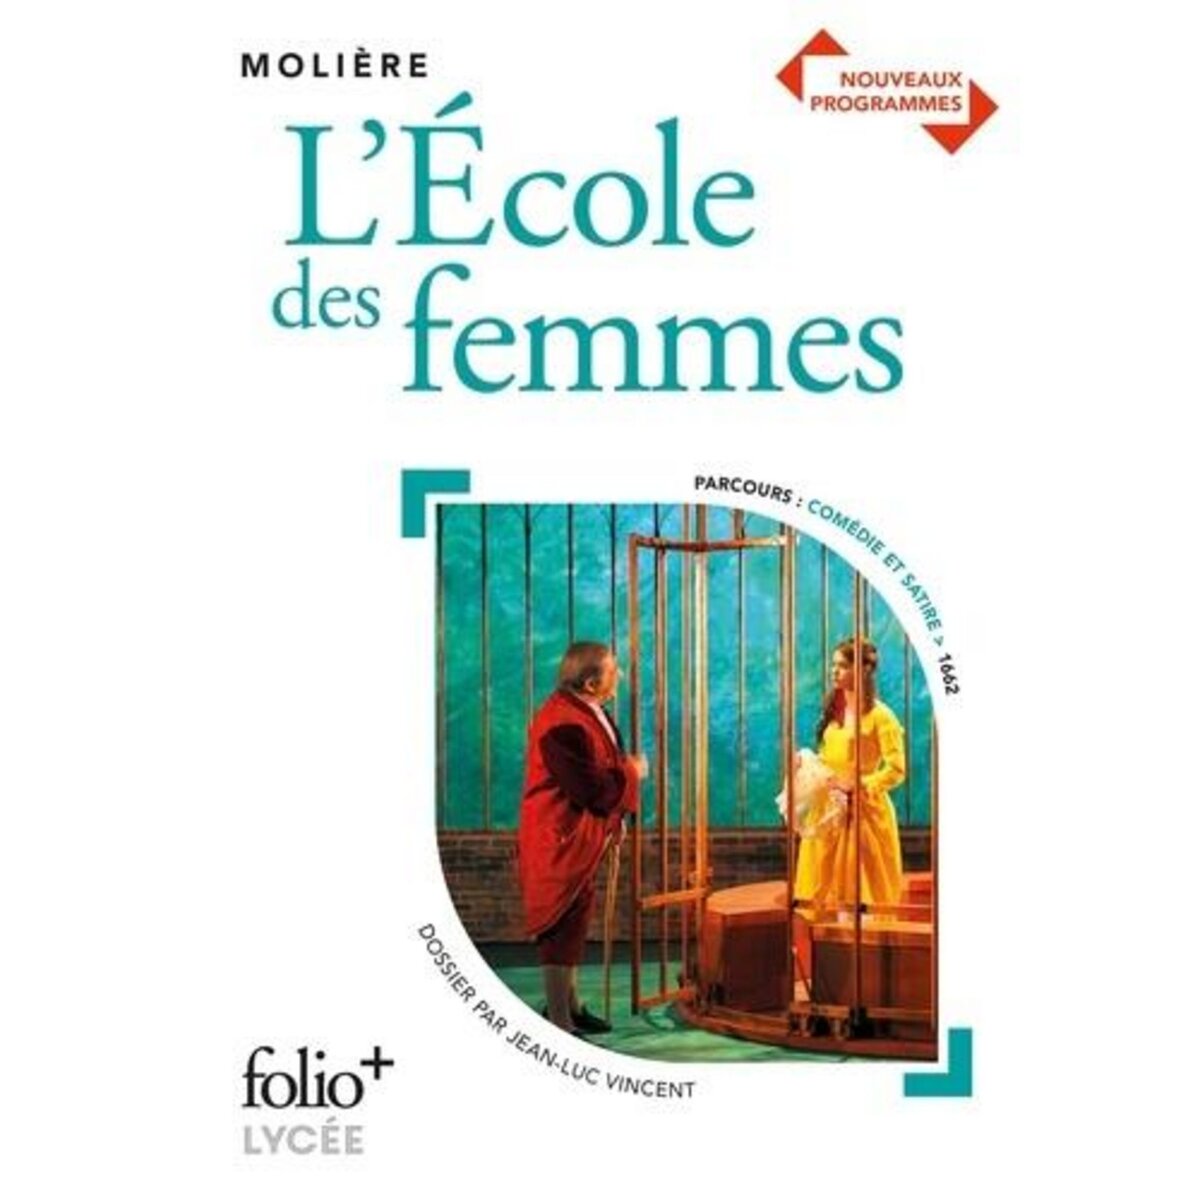  L'ECOLE DES FEMMES, Molière